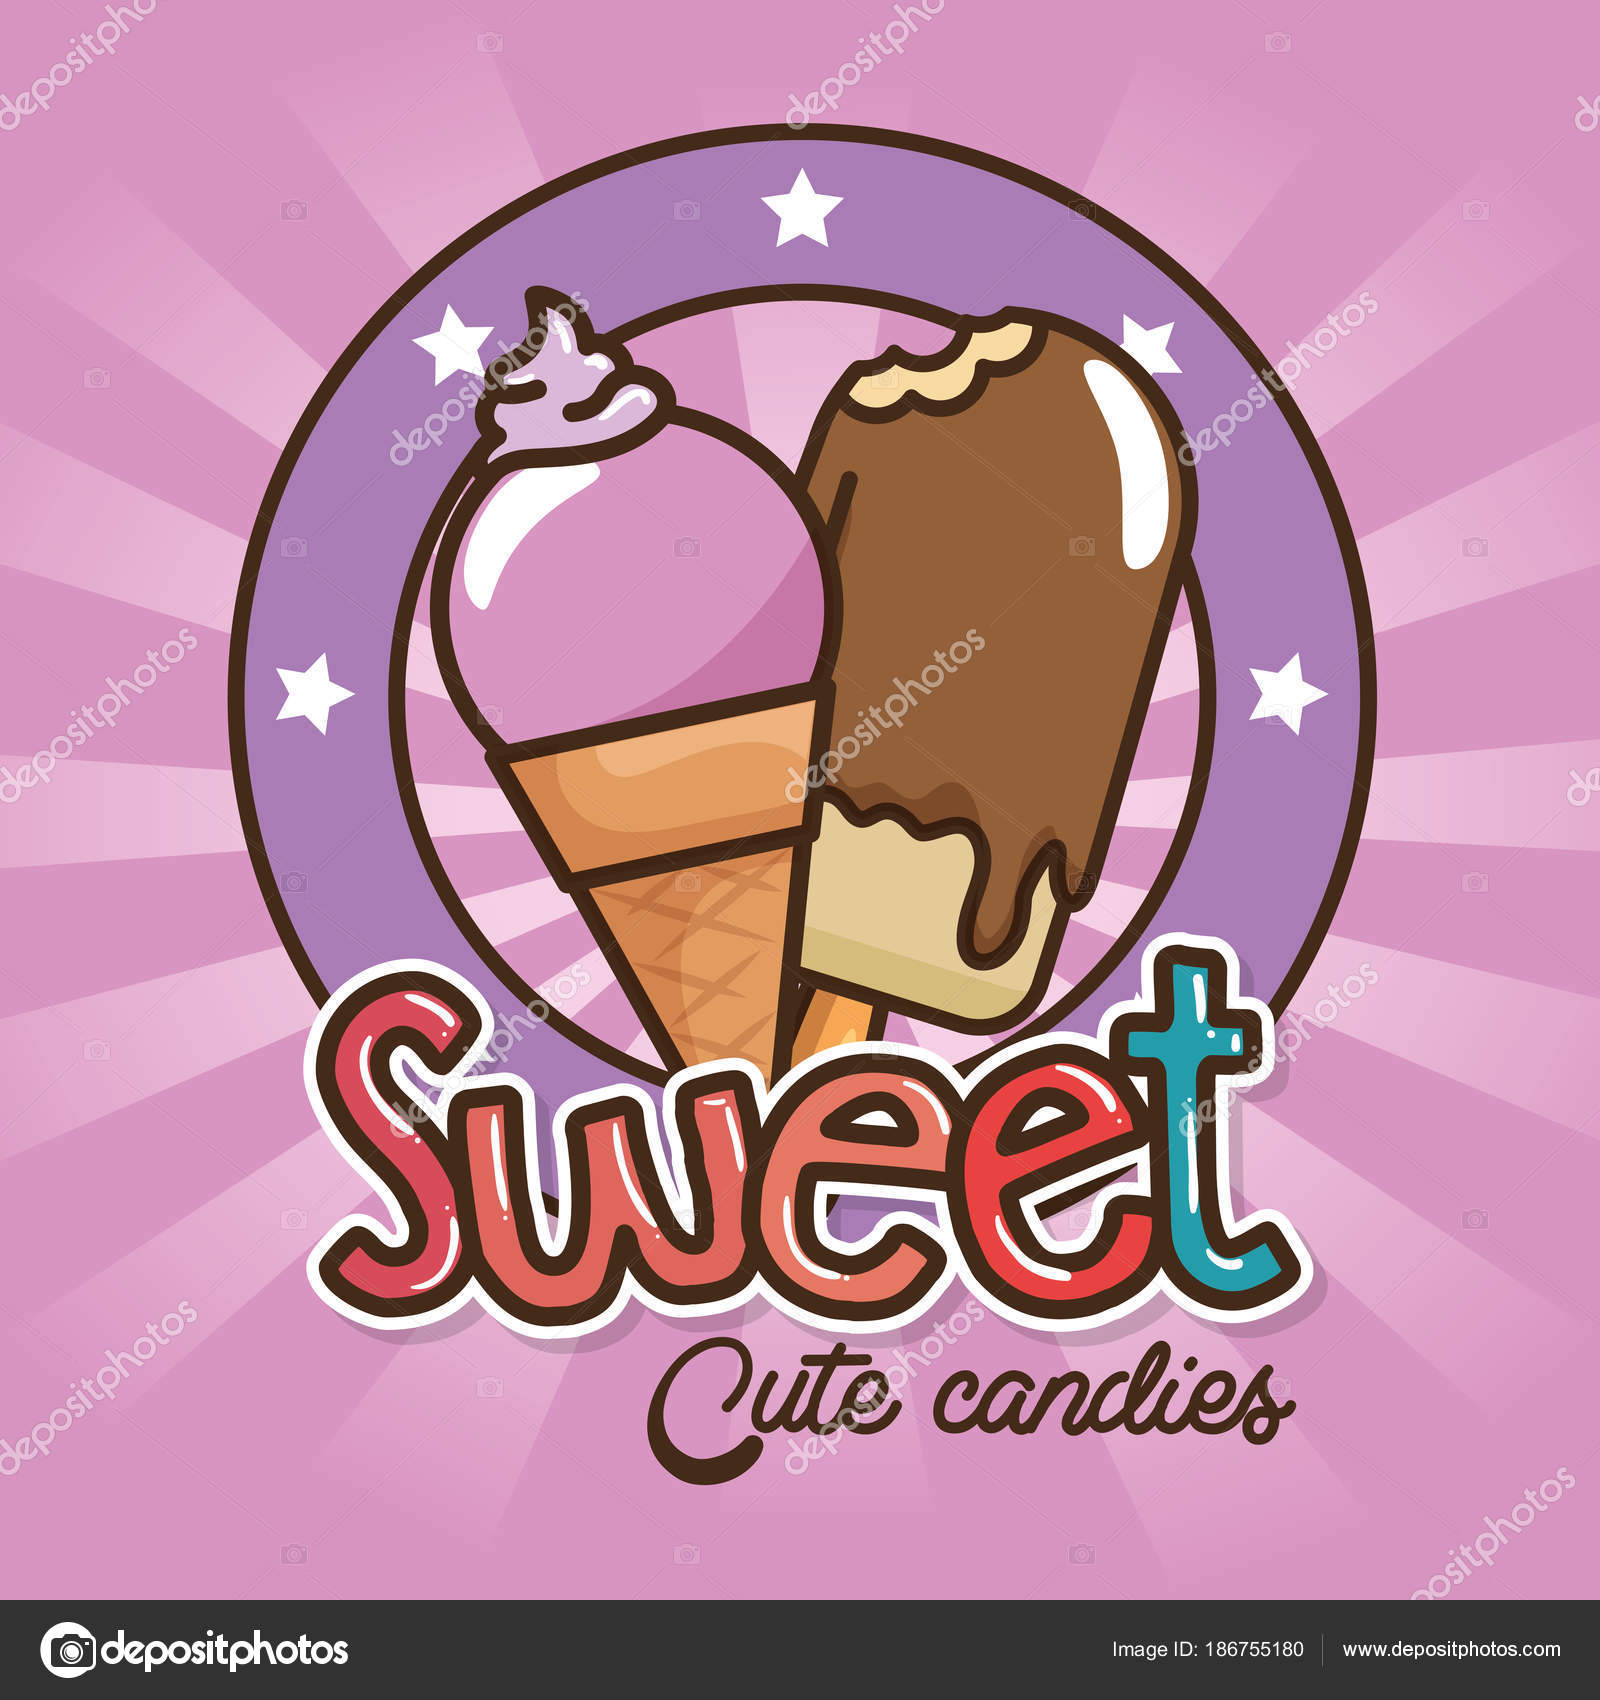 Kawaii sweets and candies cartoon Stock Vector Image by ©yupiramos ...